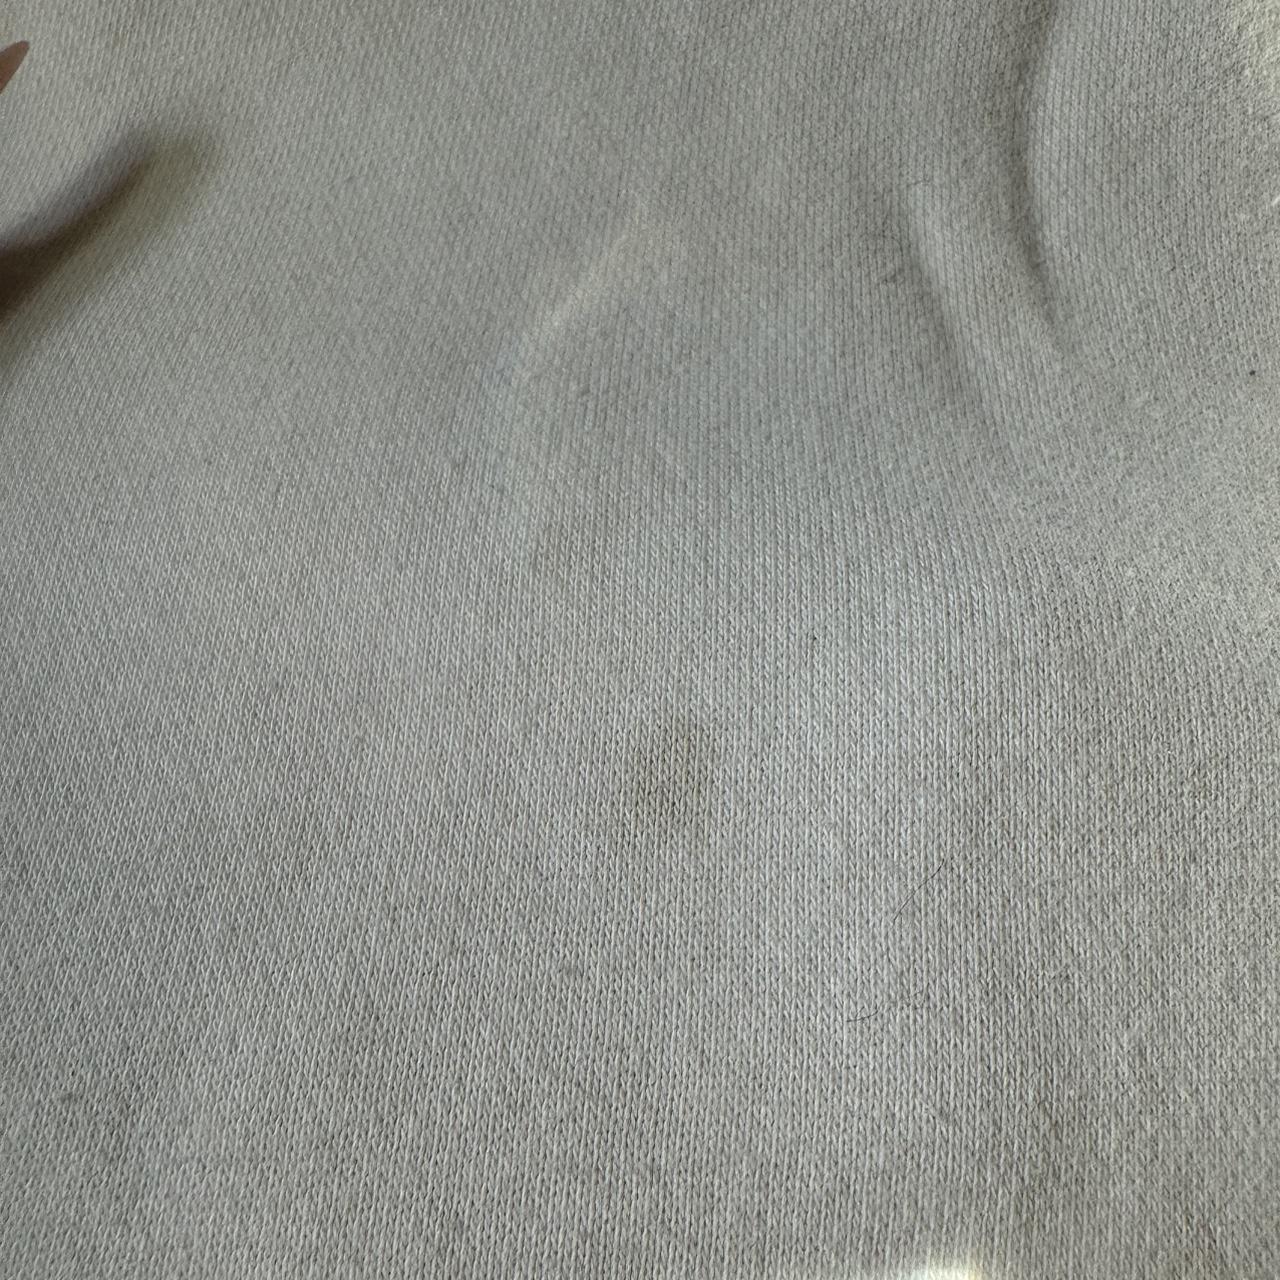 white Nike hoodie minor stain - Depop